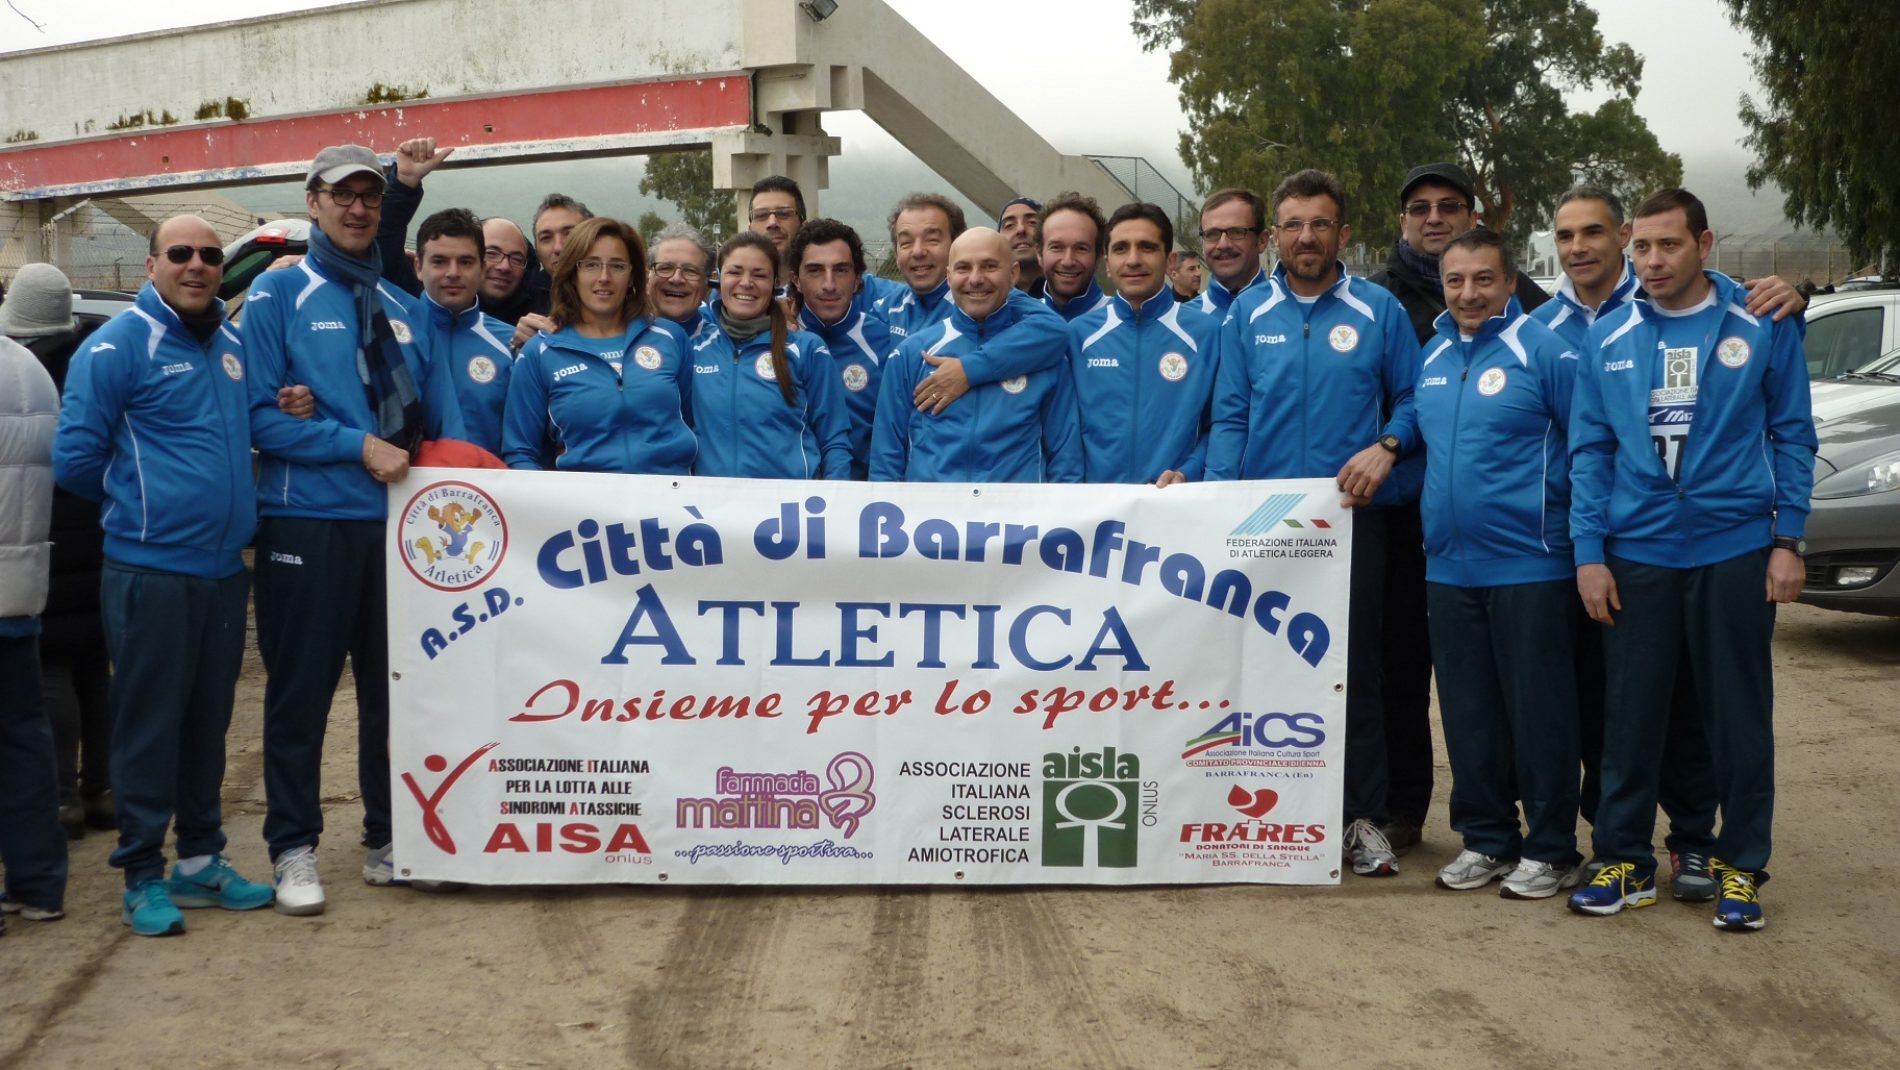 Oggi i 22 atleti barresi a Catania per partecipare al Grand Prix Regionale “Walk of Live Telethon”